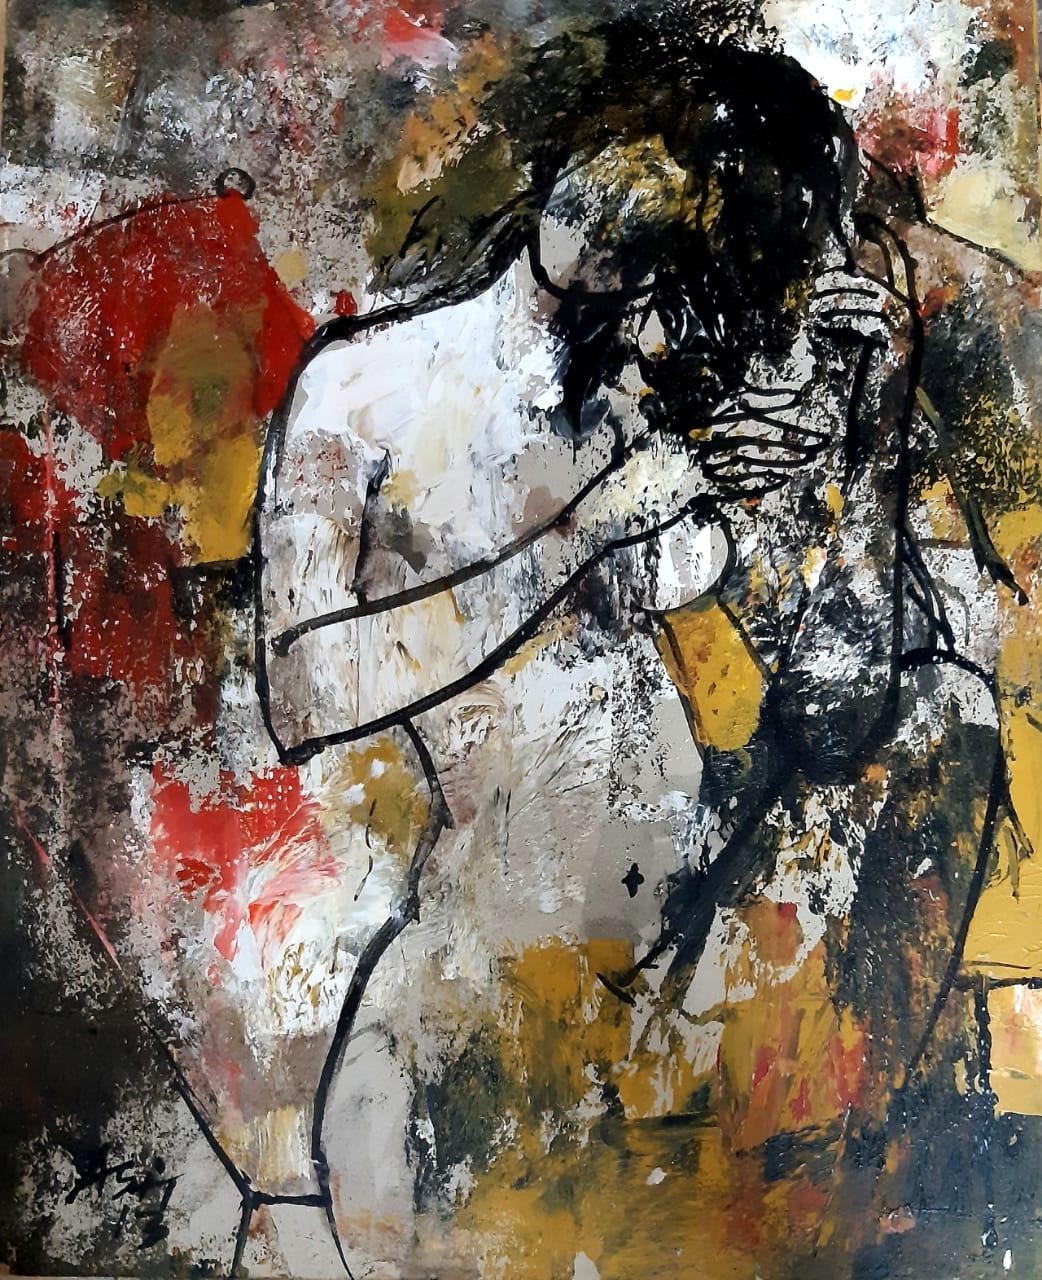 Ashit Sarkar Nude Painting – Nackte Frau, Acryl auf Leinwand, Rot, Gelb, Schwarz von Indischer Künstler "Auf Lager"